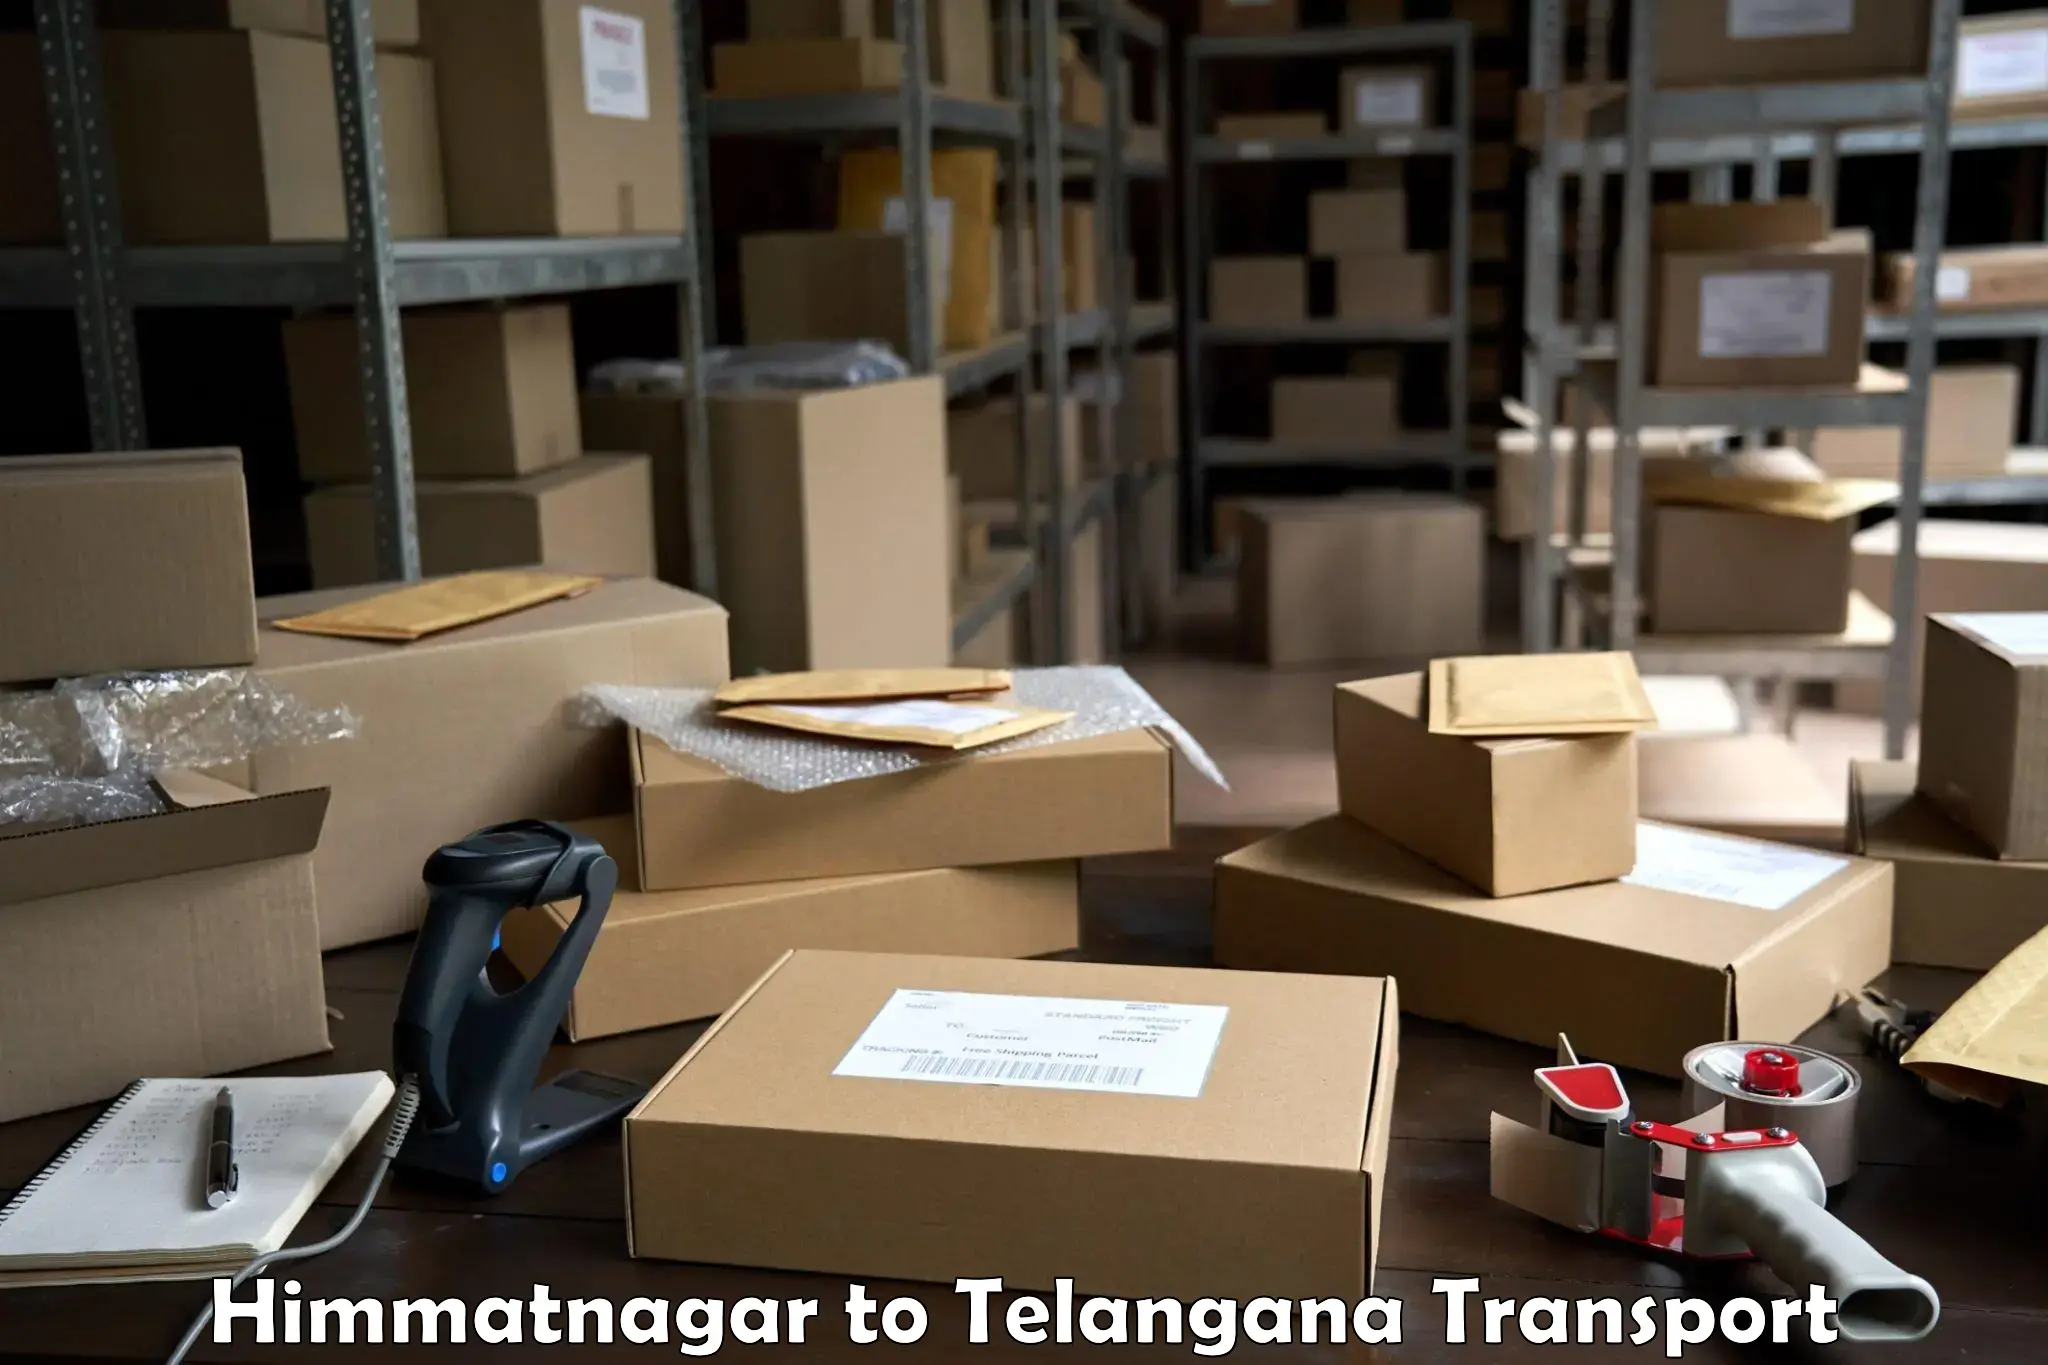 Commercial transport service Himmatnagar to Nalgonda